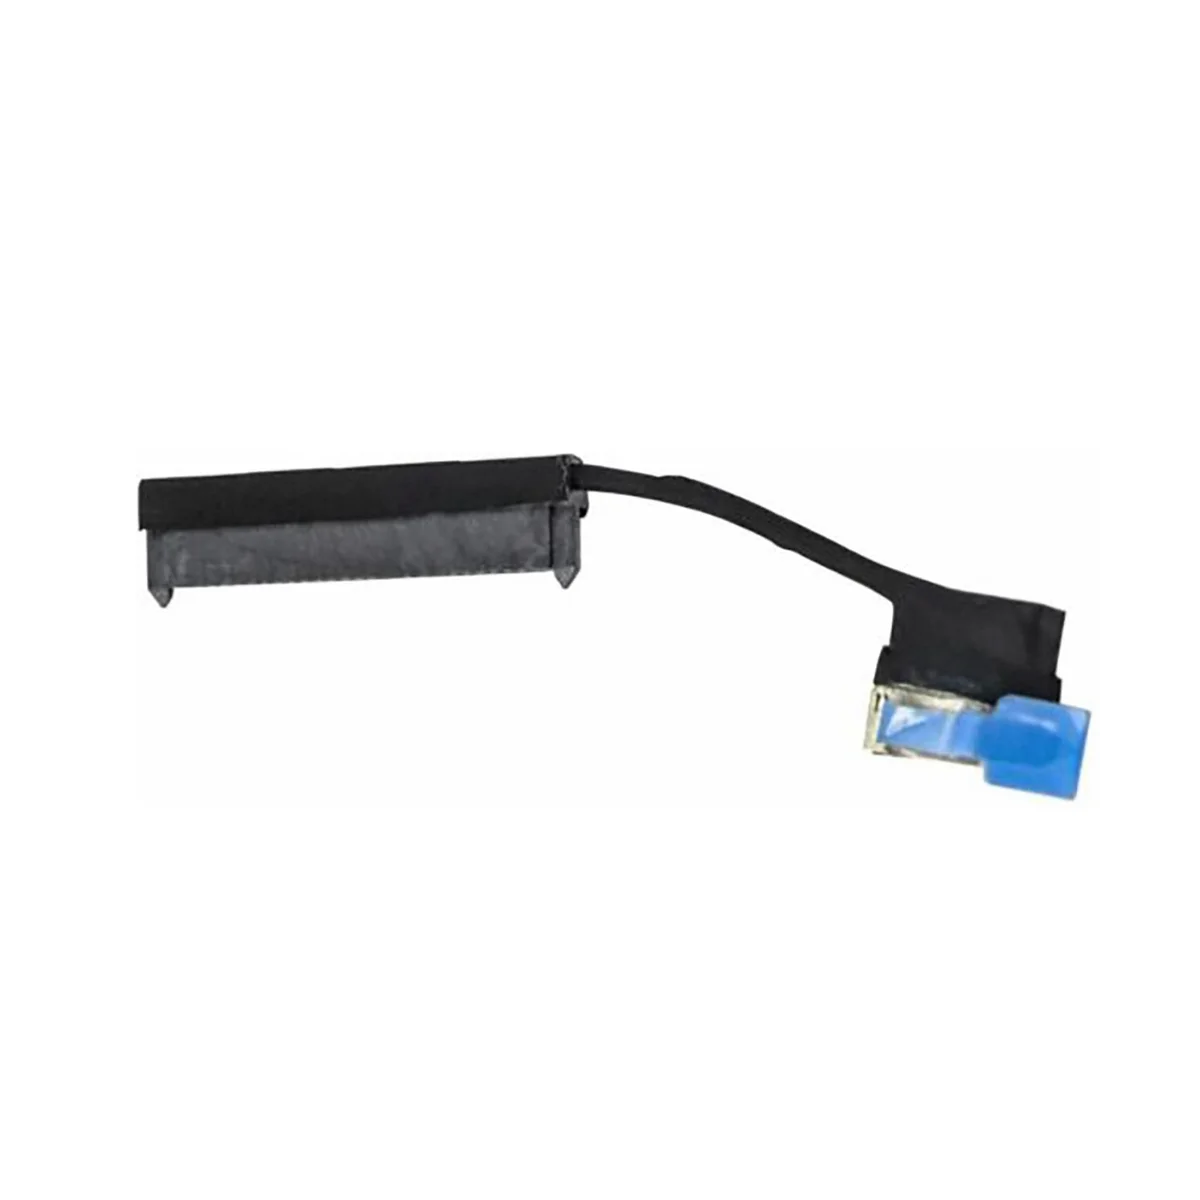 

Кабель SATA для жесткого диска XPS15 9530 L521X M3800 кабель интерфейса 0DG95V